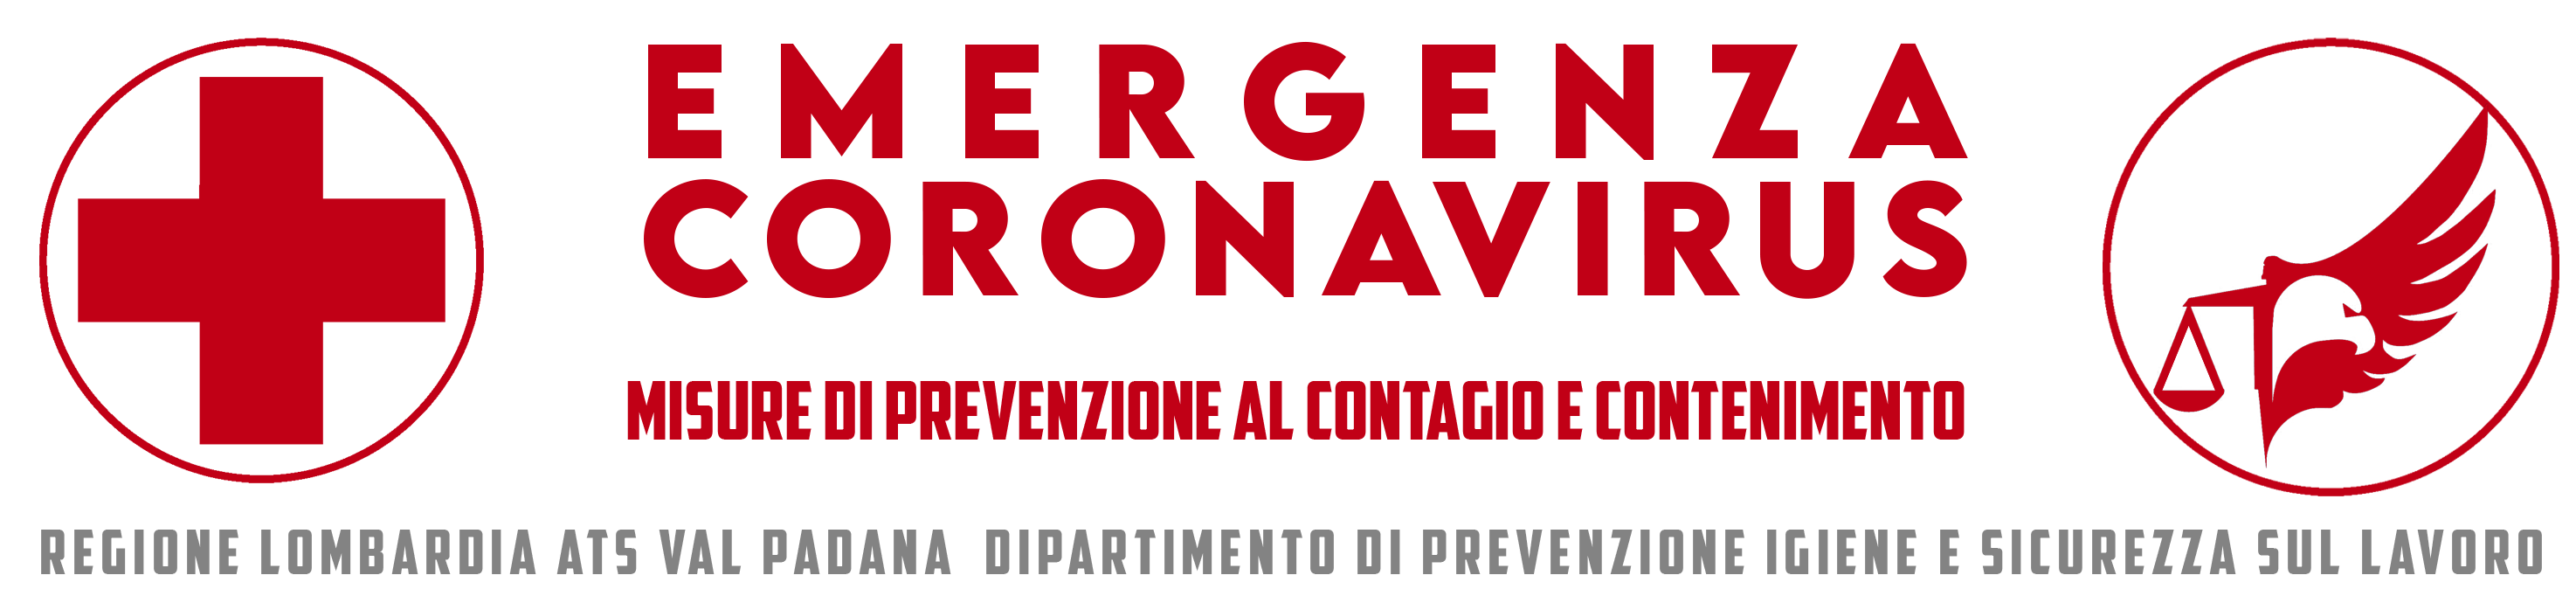 Banner EMERGENZA CORONAVIRUS